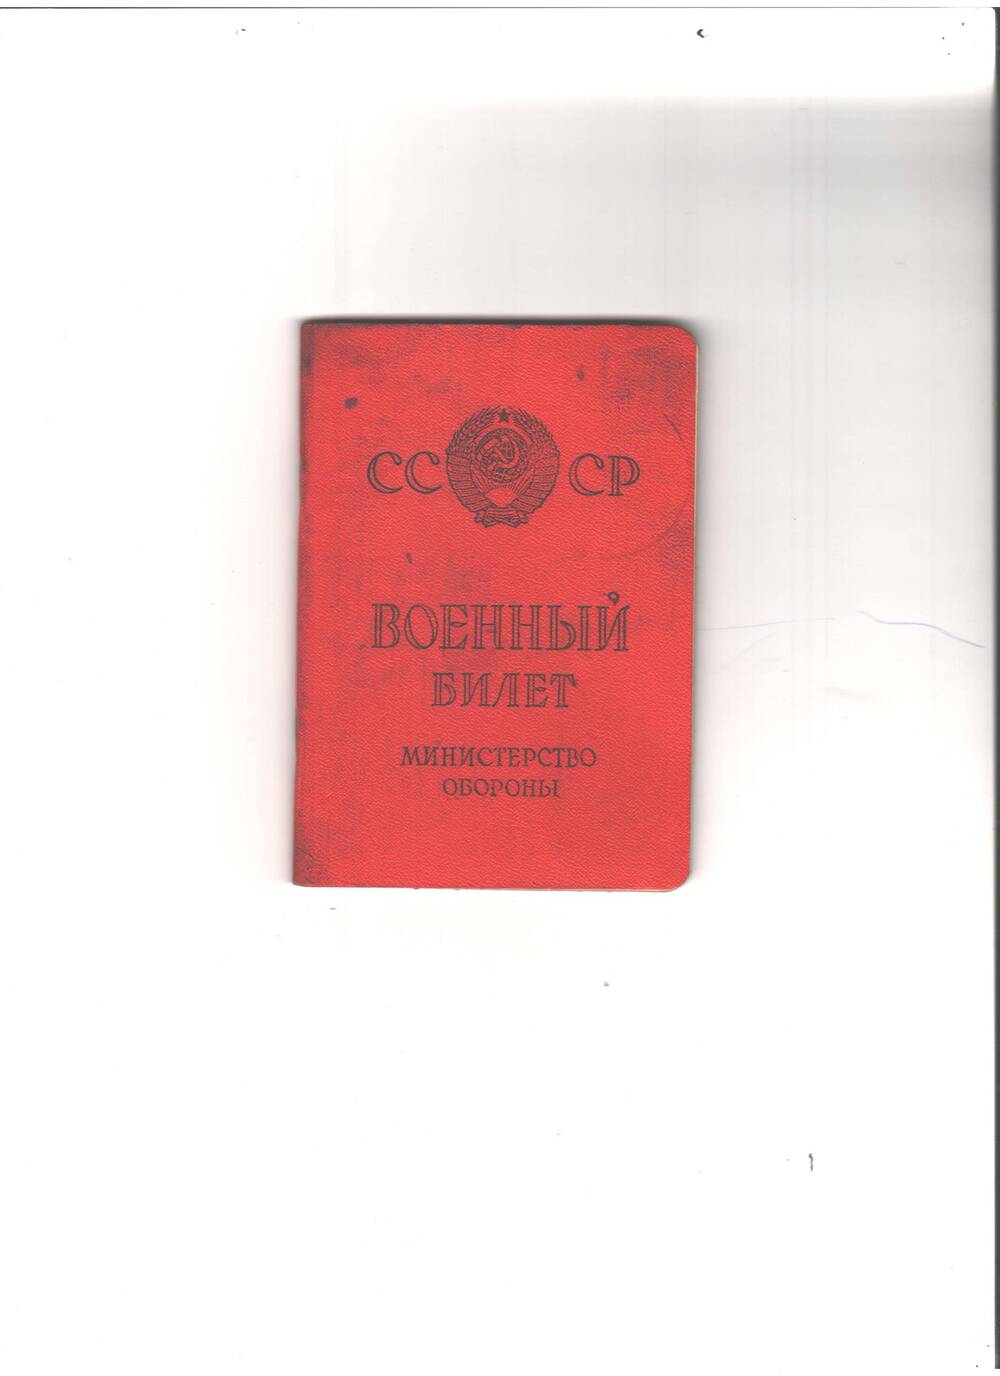 Билет — военный, НП № 3944681 Хурматуллина Фазыляна Х. Выдан Илишевским районным военным комиссариатом БАССР 6 июня 1969 года. Имеется фото. Прилагаются учетно-прослужная карточка.